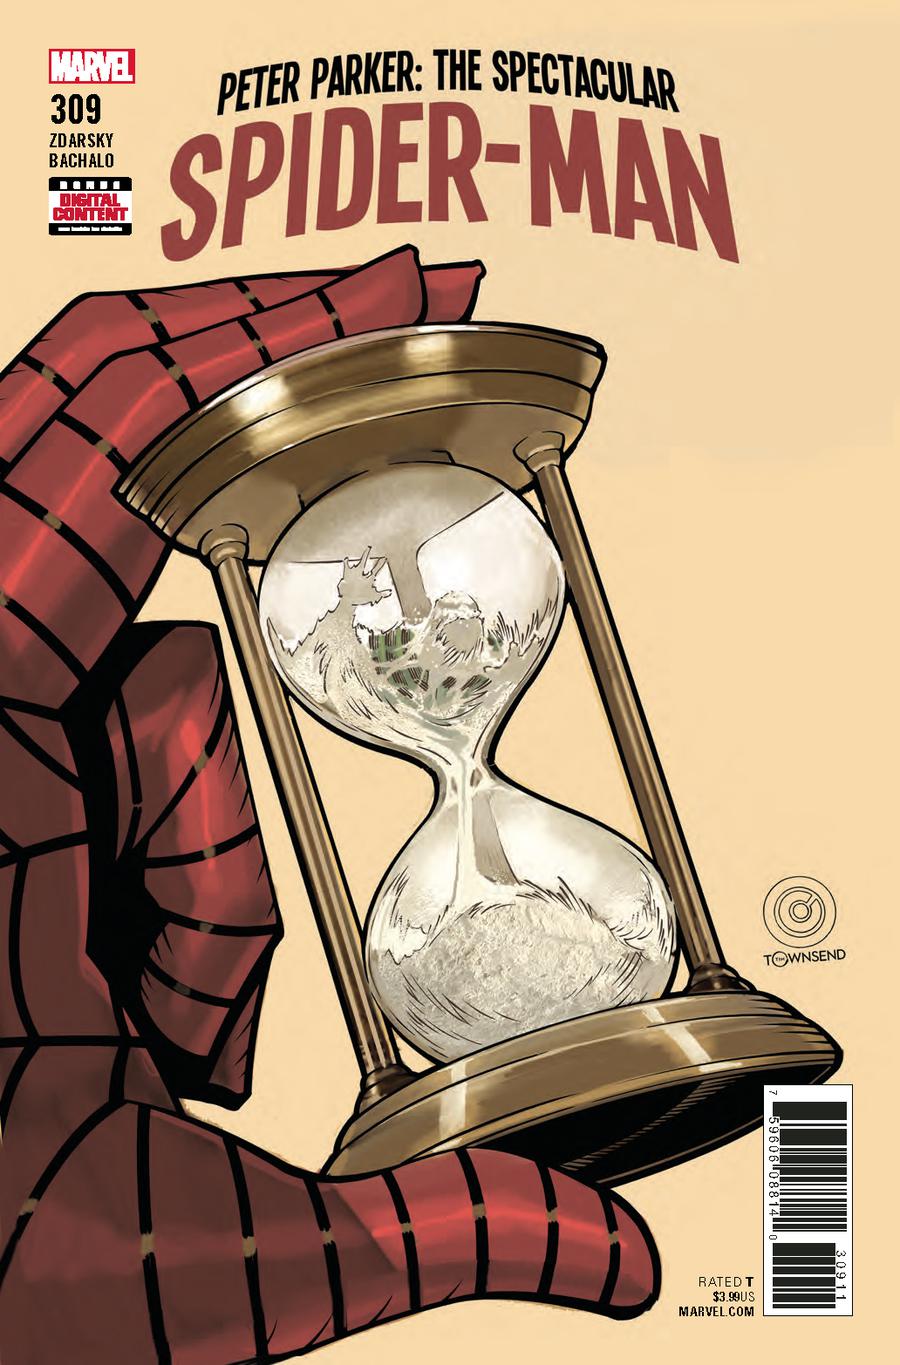 Peter Parker Spectacular Spider-Man #309